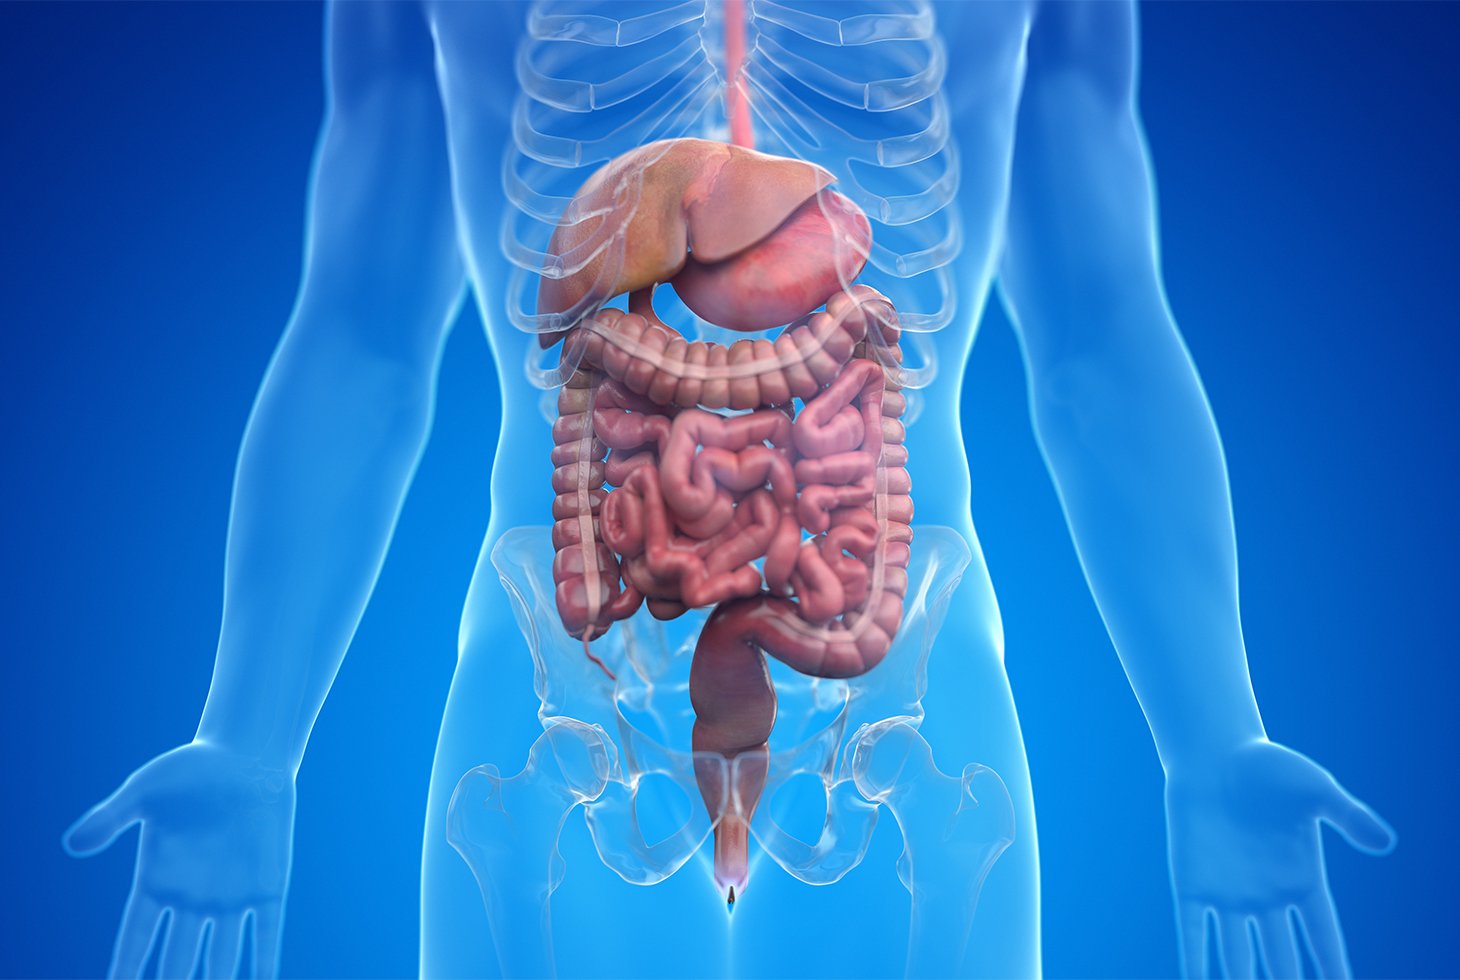 Représentation visuelle : anatomie du système digestif humain